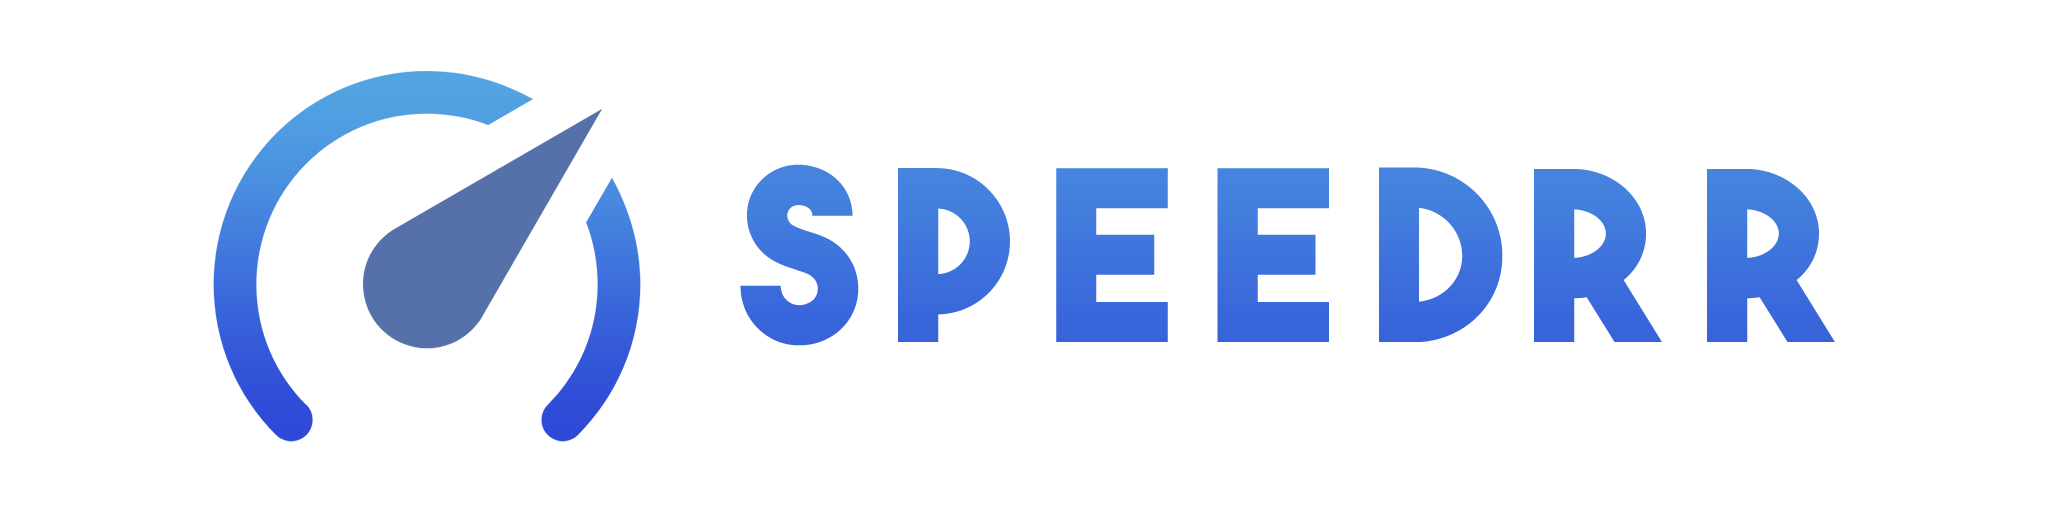 speedrr